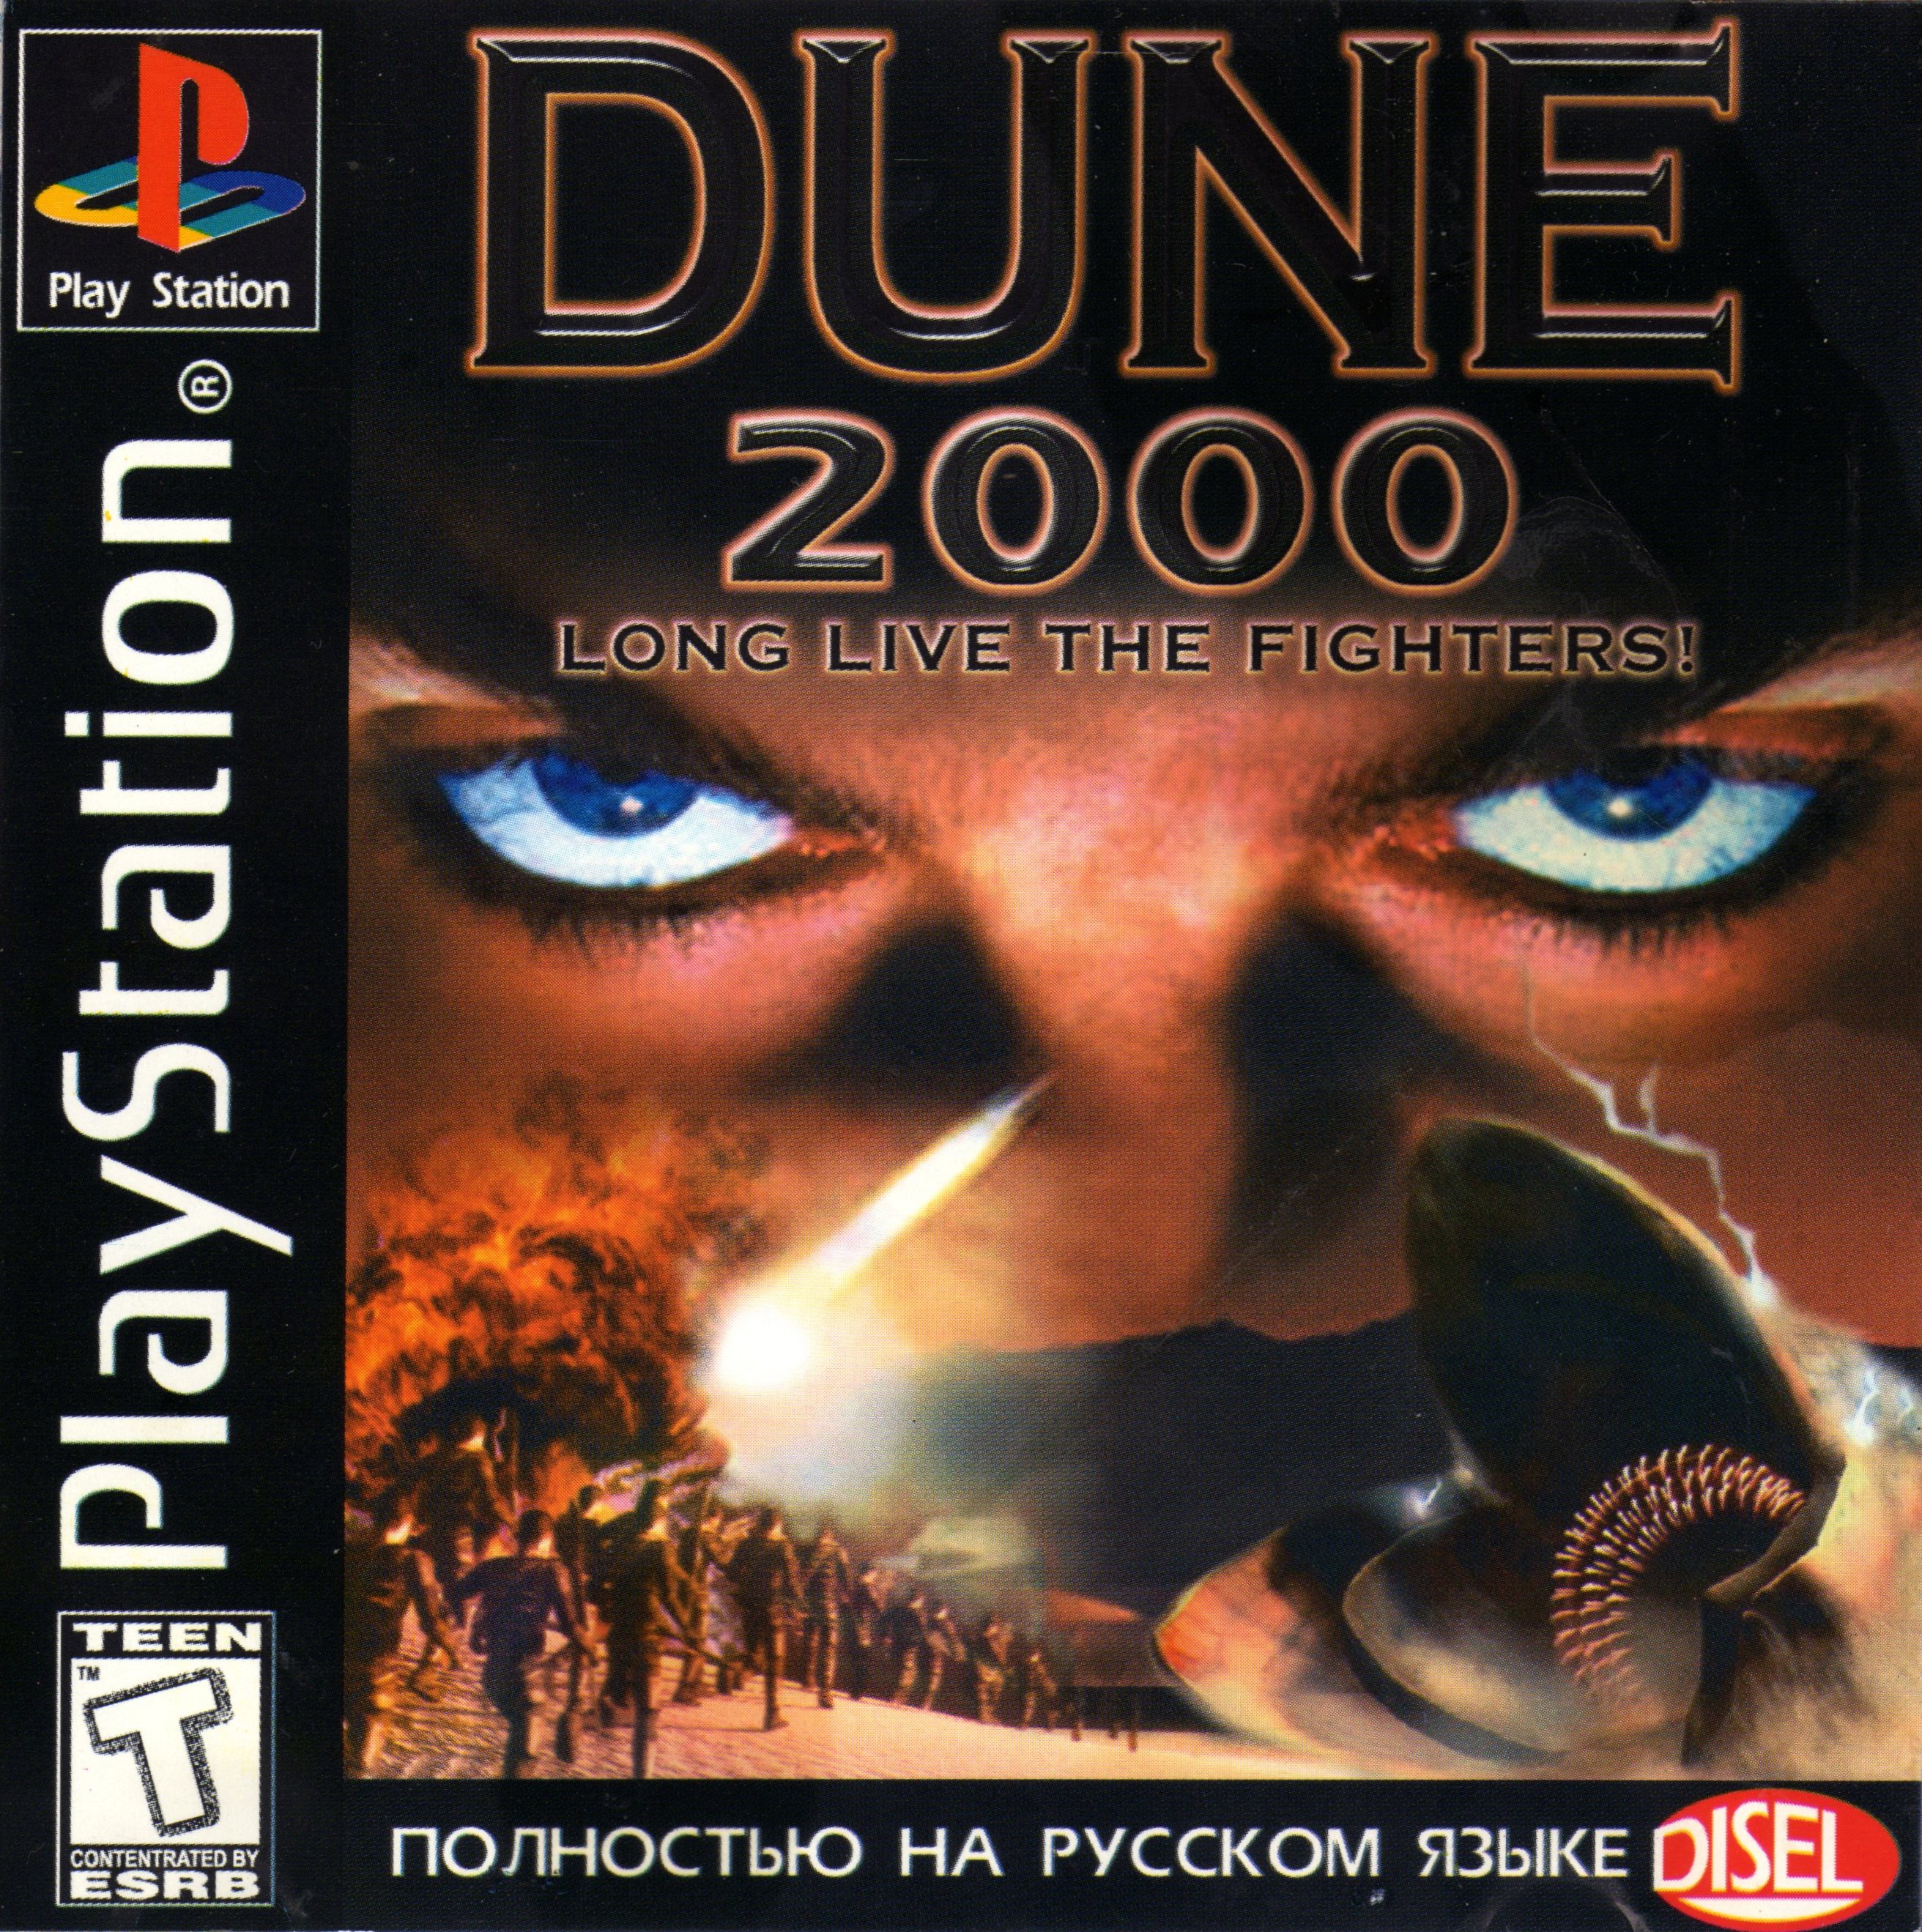 Duna 1. Dune 2000 PLAYSTATION. Dune 2000 ps1. Dune 2000 ps1 обложка. Dune 2000 PLAYSTATION 1.